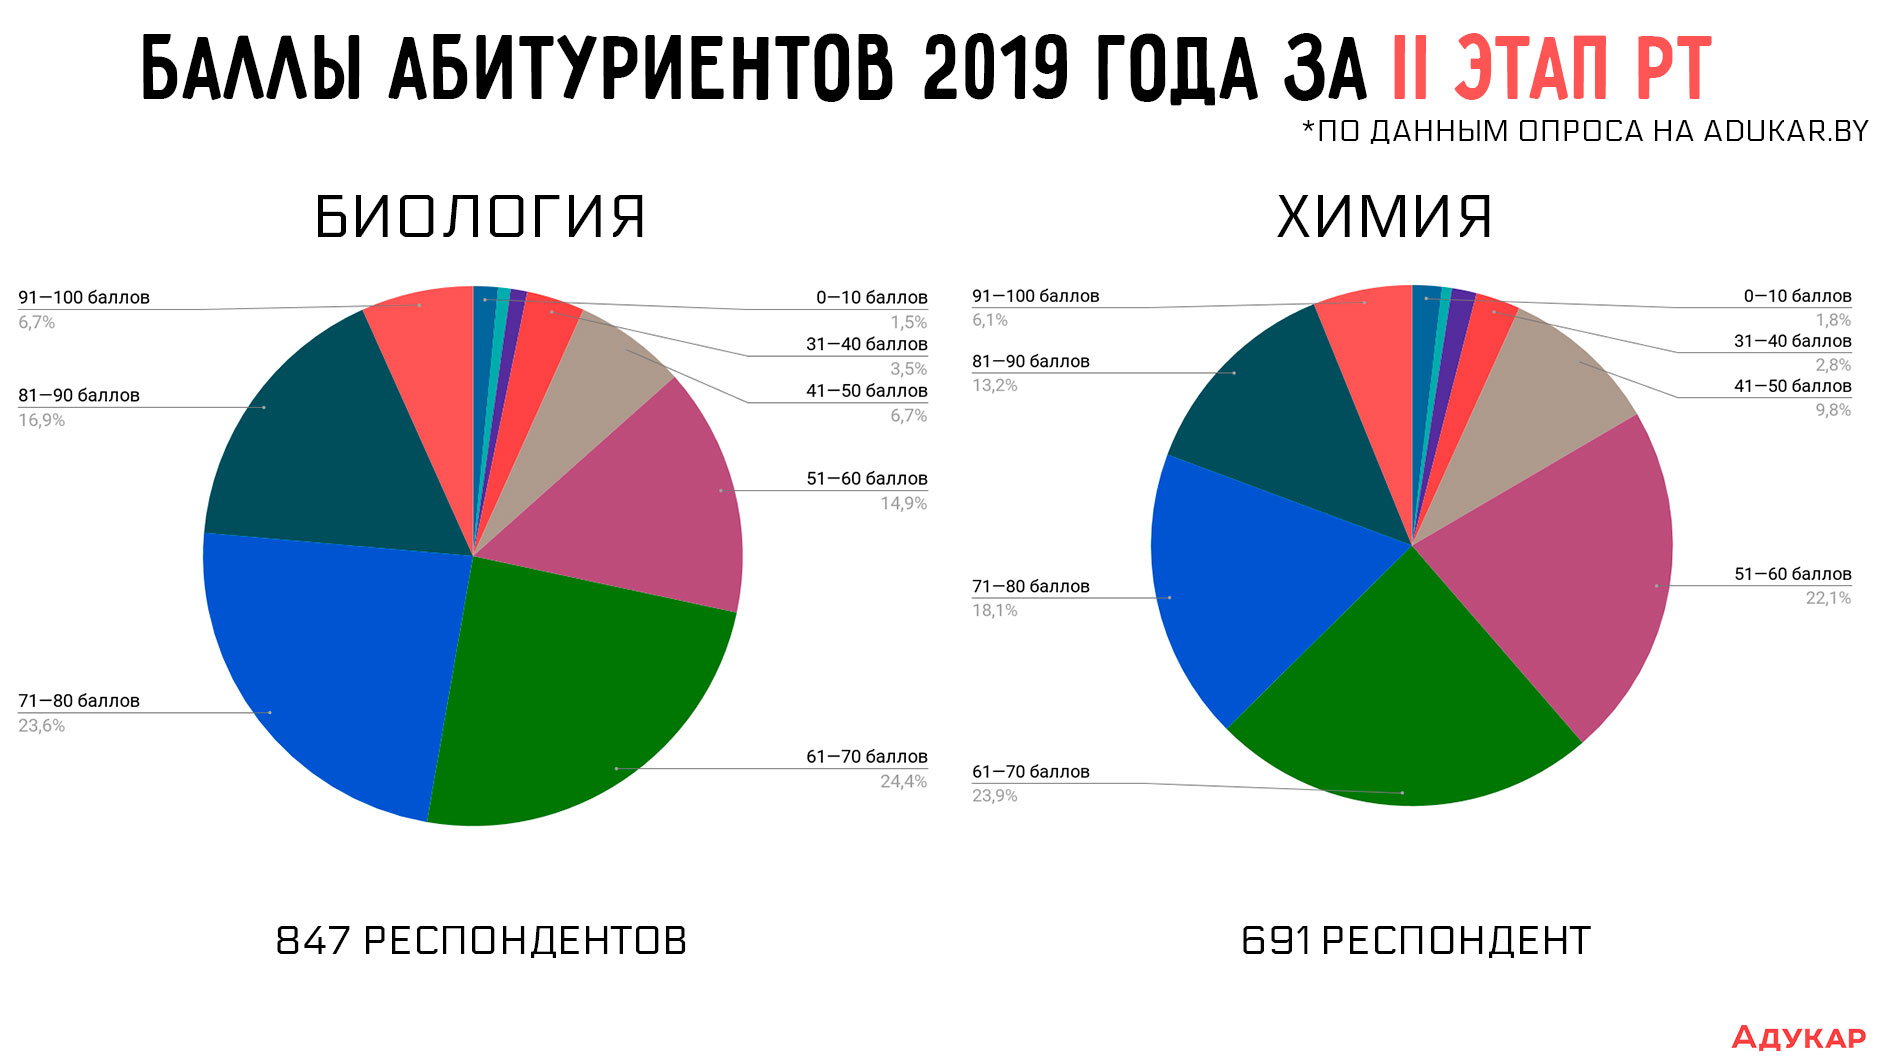 Как видно на инфографике государственные языки абитуриенты 2019 года в большинстве случаев сдают выше 50 баллов